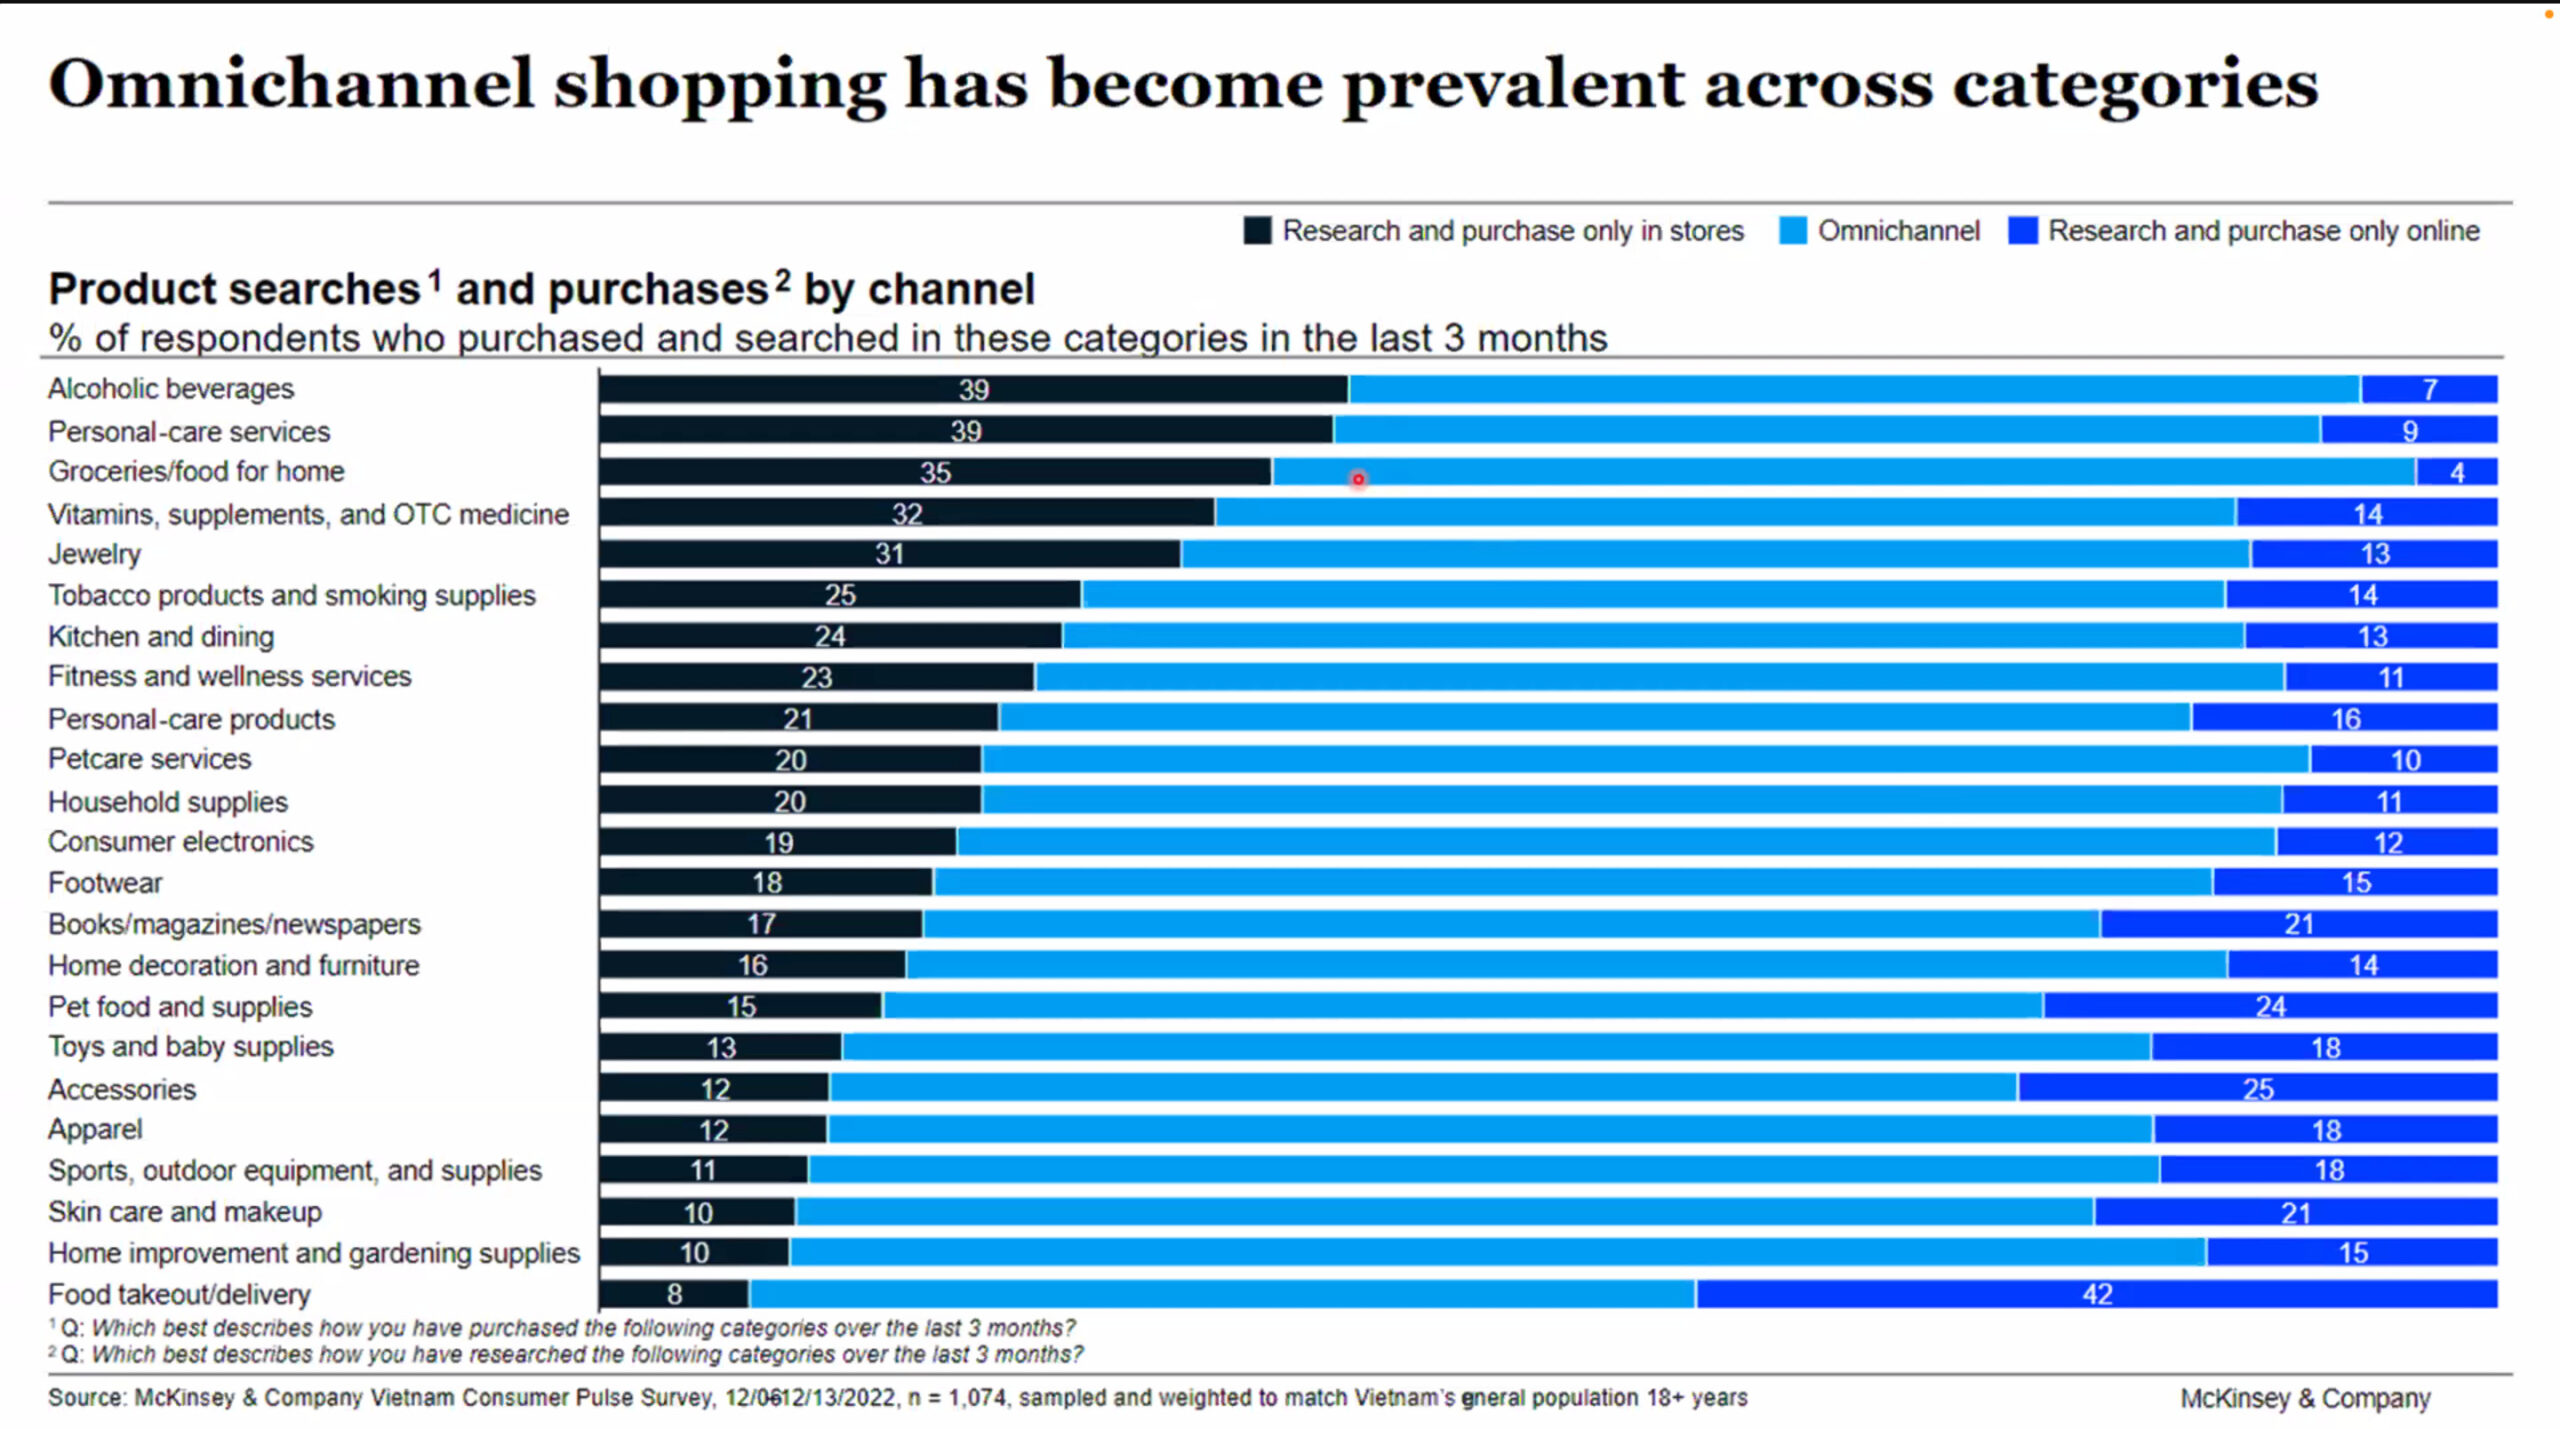 Hành vi mua sắm của khách hàng dựa trên độ tuổi